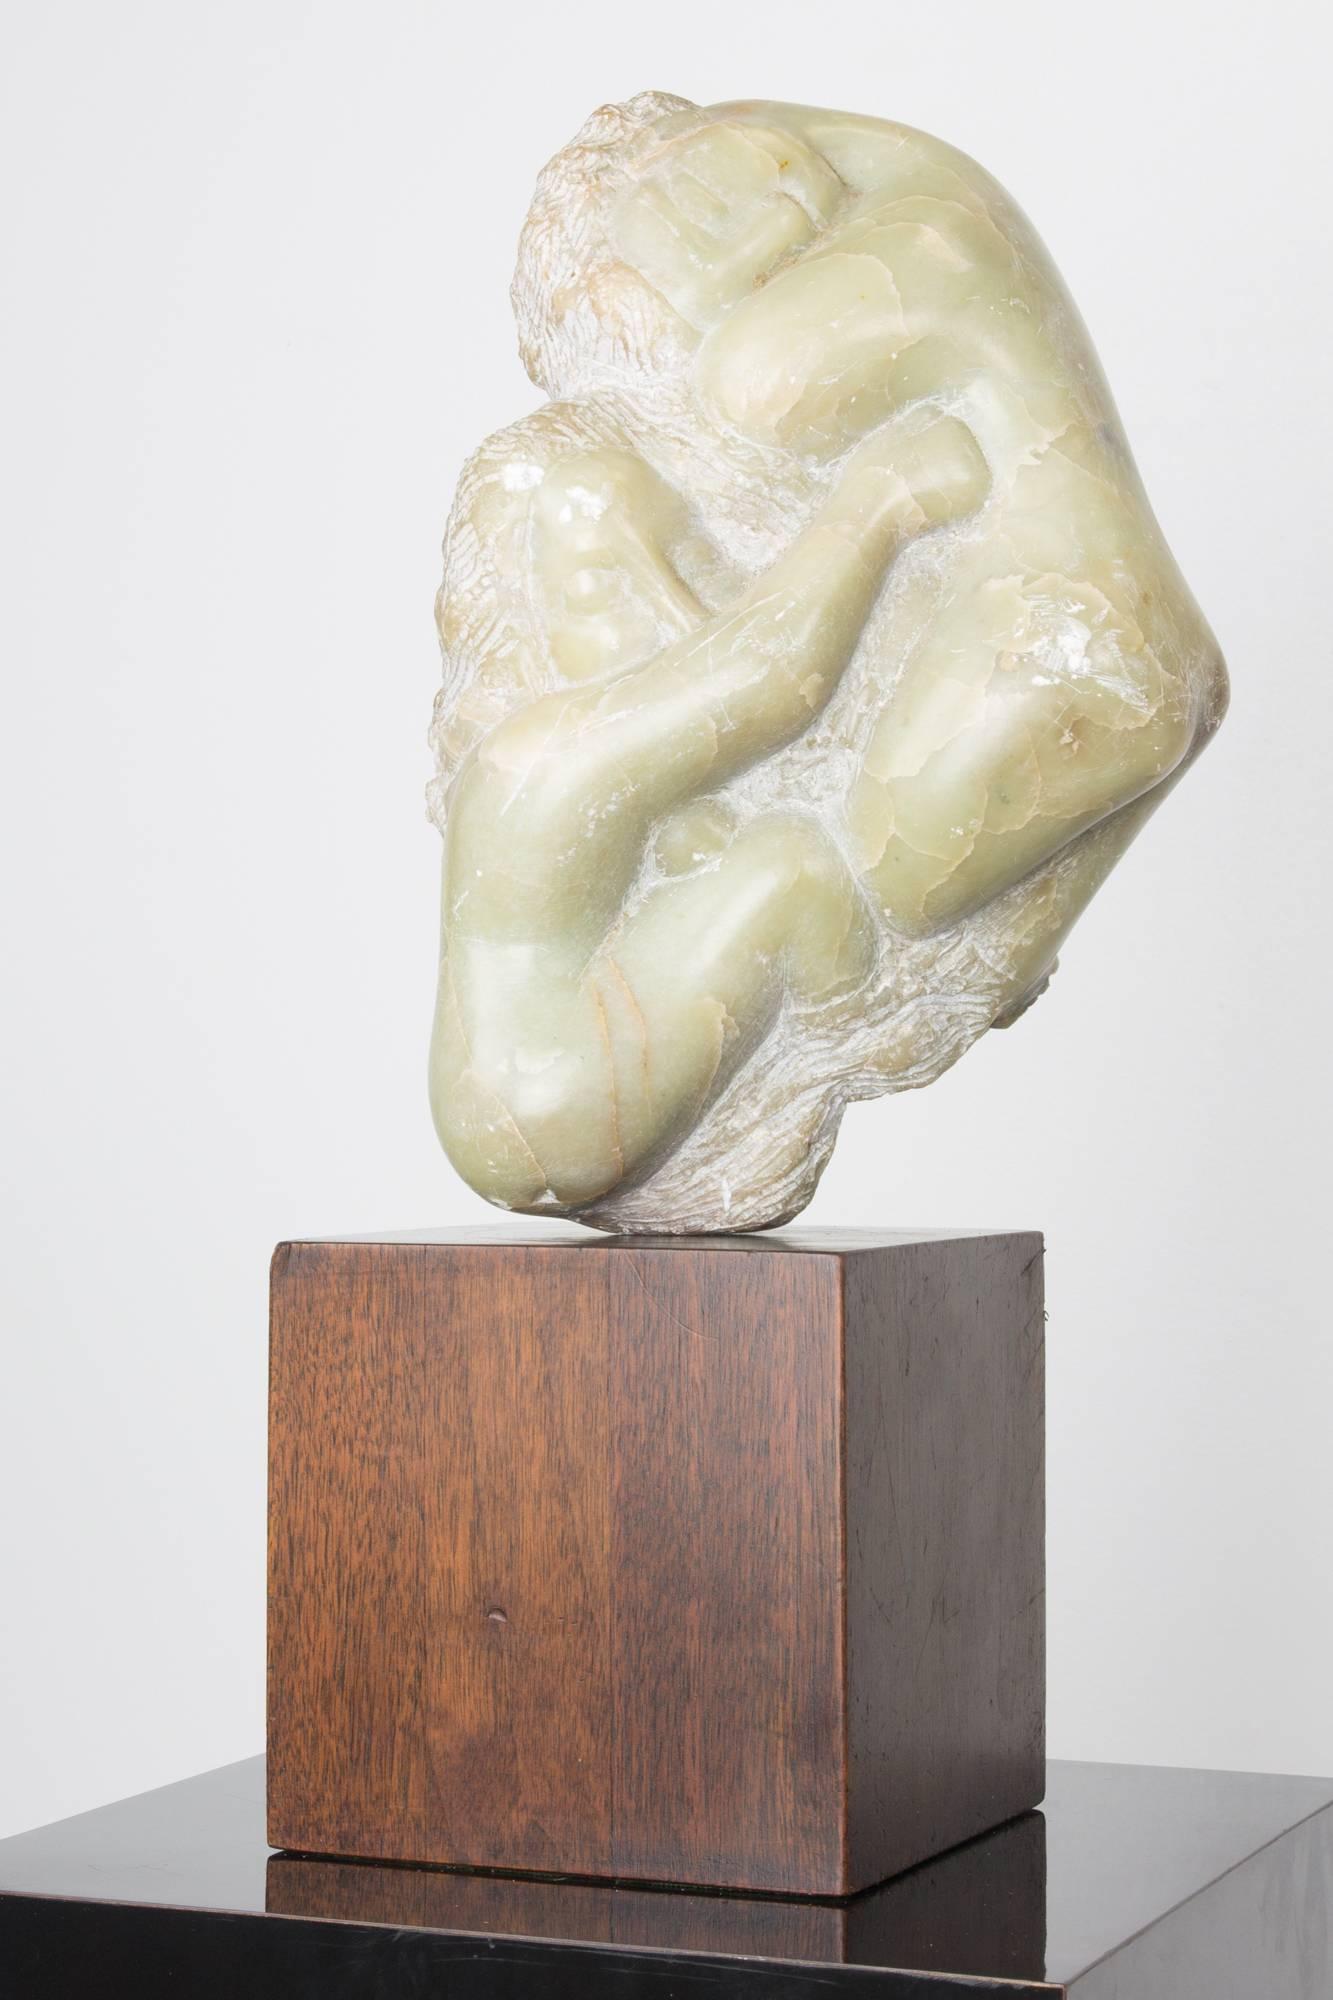 Schönes Beispiel für die raue und geschliffene Bildhauerkunst von Bernard Simon: zwei Figuren, die sich umarmen, montiert auf einem quadratischen Holzblock und drehbar auf einem Metallstift. 

Bernard Simon (1896-1980) war ein in Russland